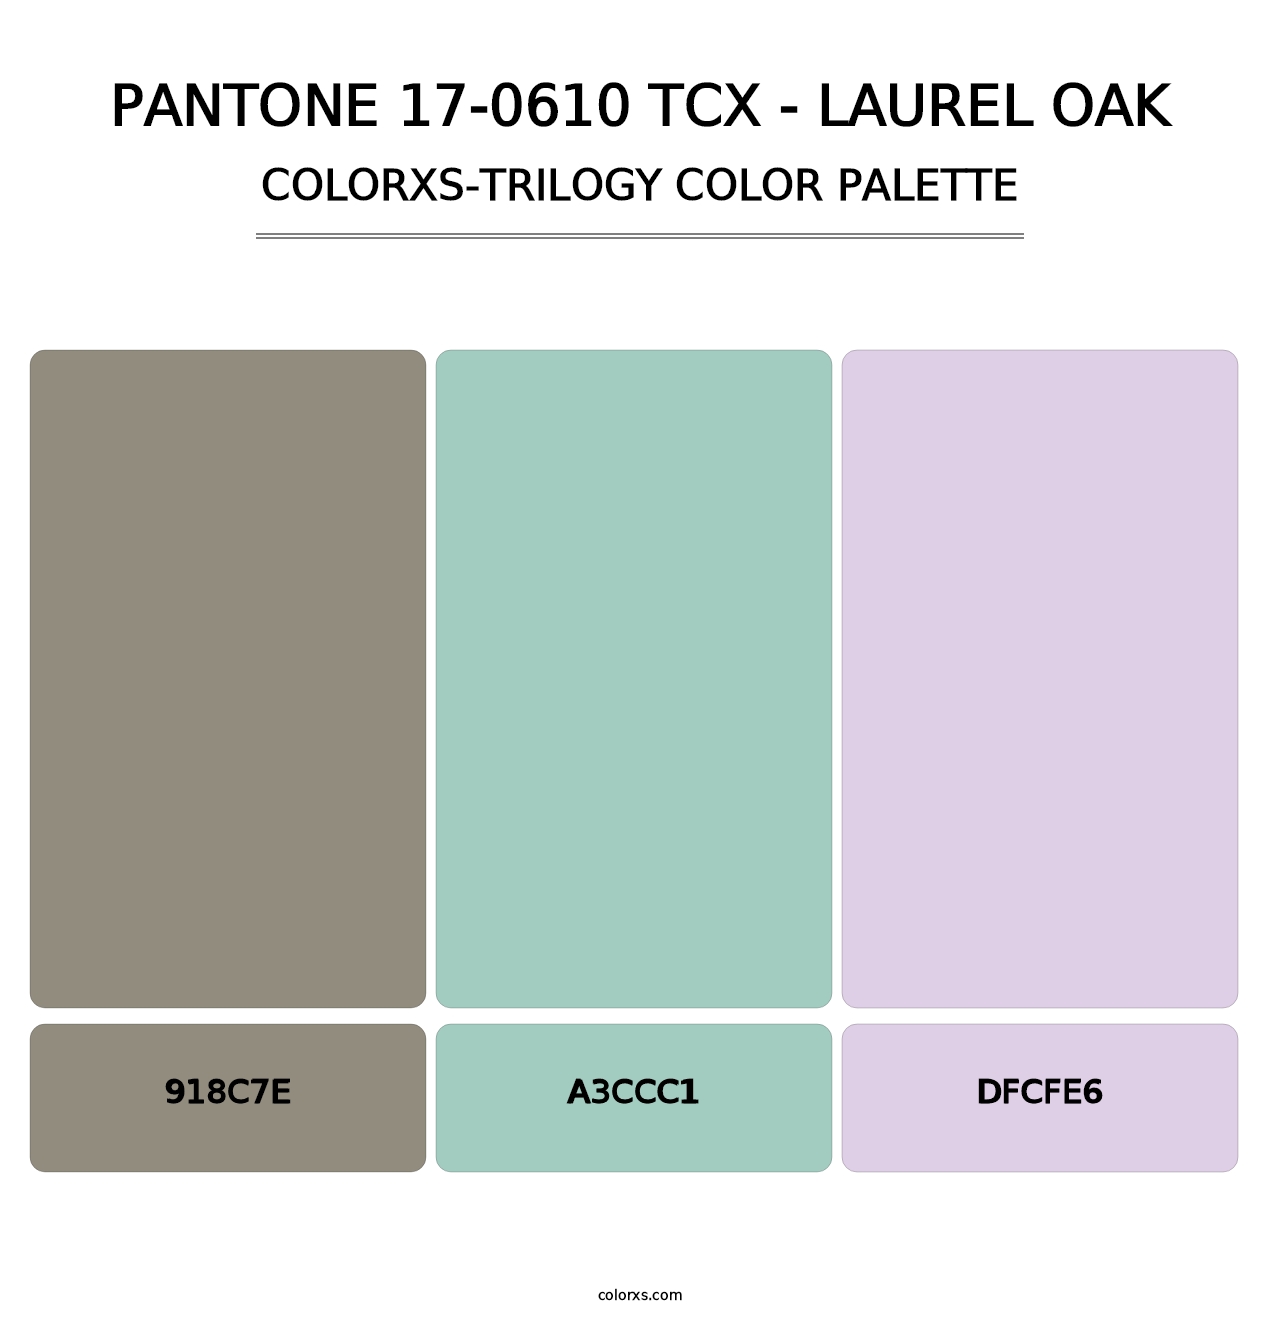 PANTONE 17-0610 TCX - Laurel Oak - Colorxs Trilogy Palette